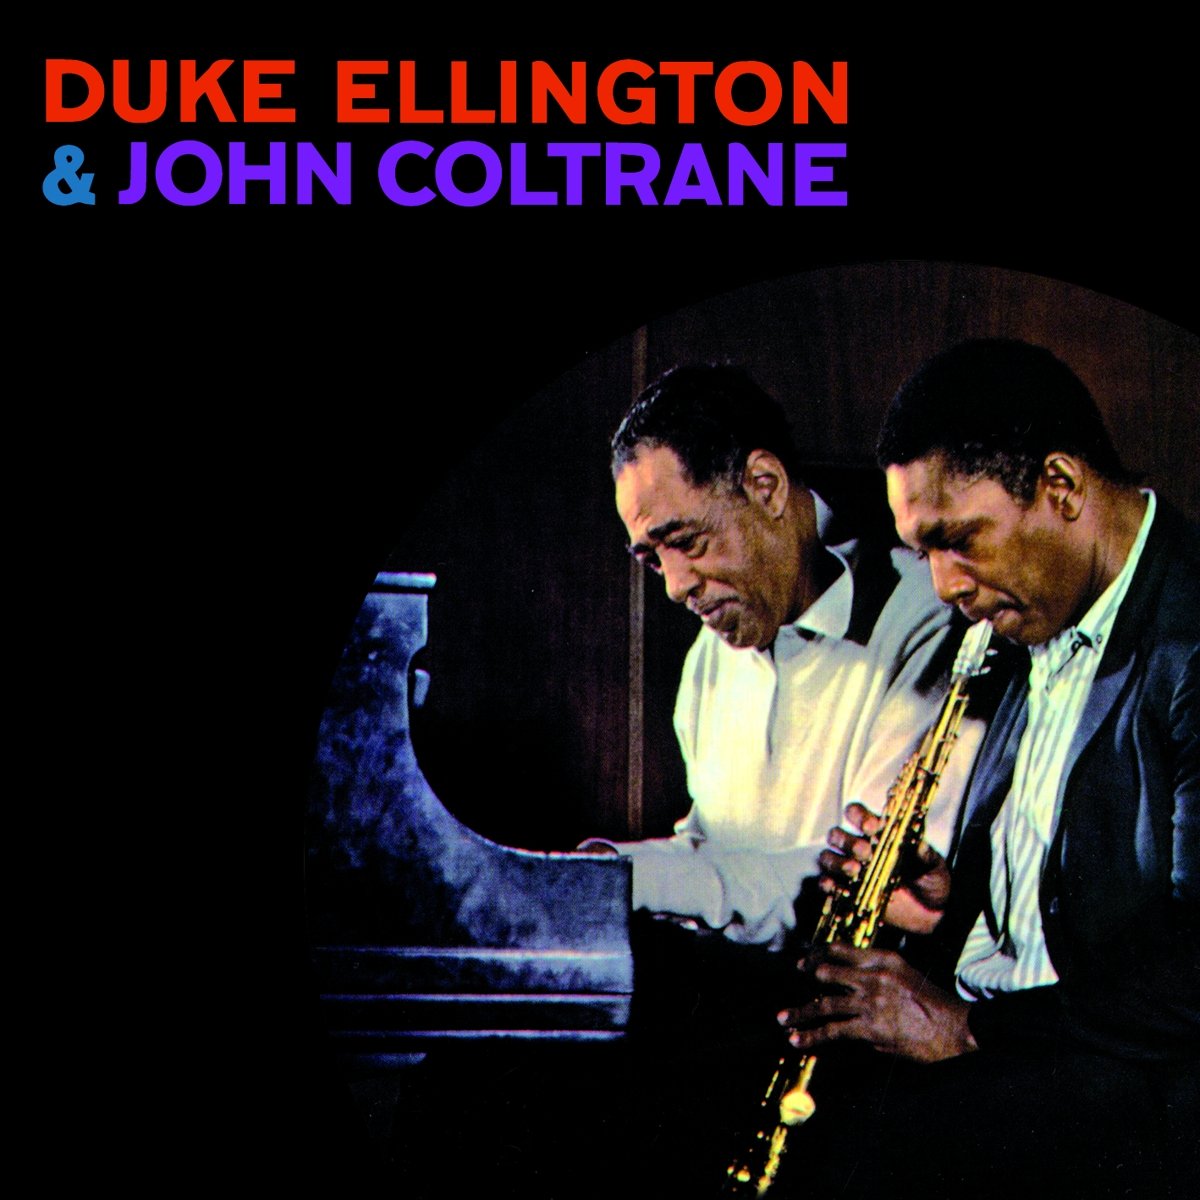 Duke Ellington & John Coltrane - Duke Ellington & John Coltrane (1963)